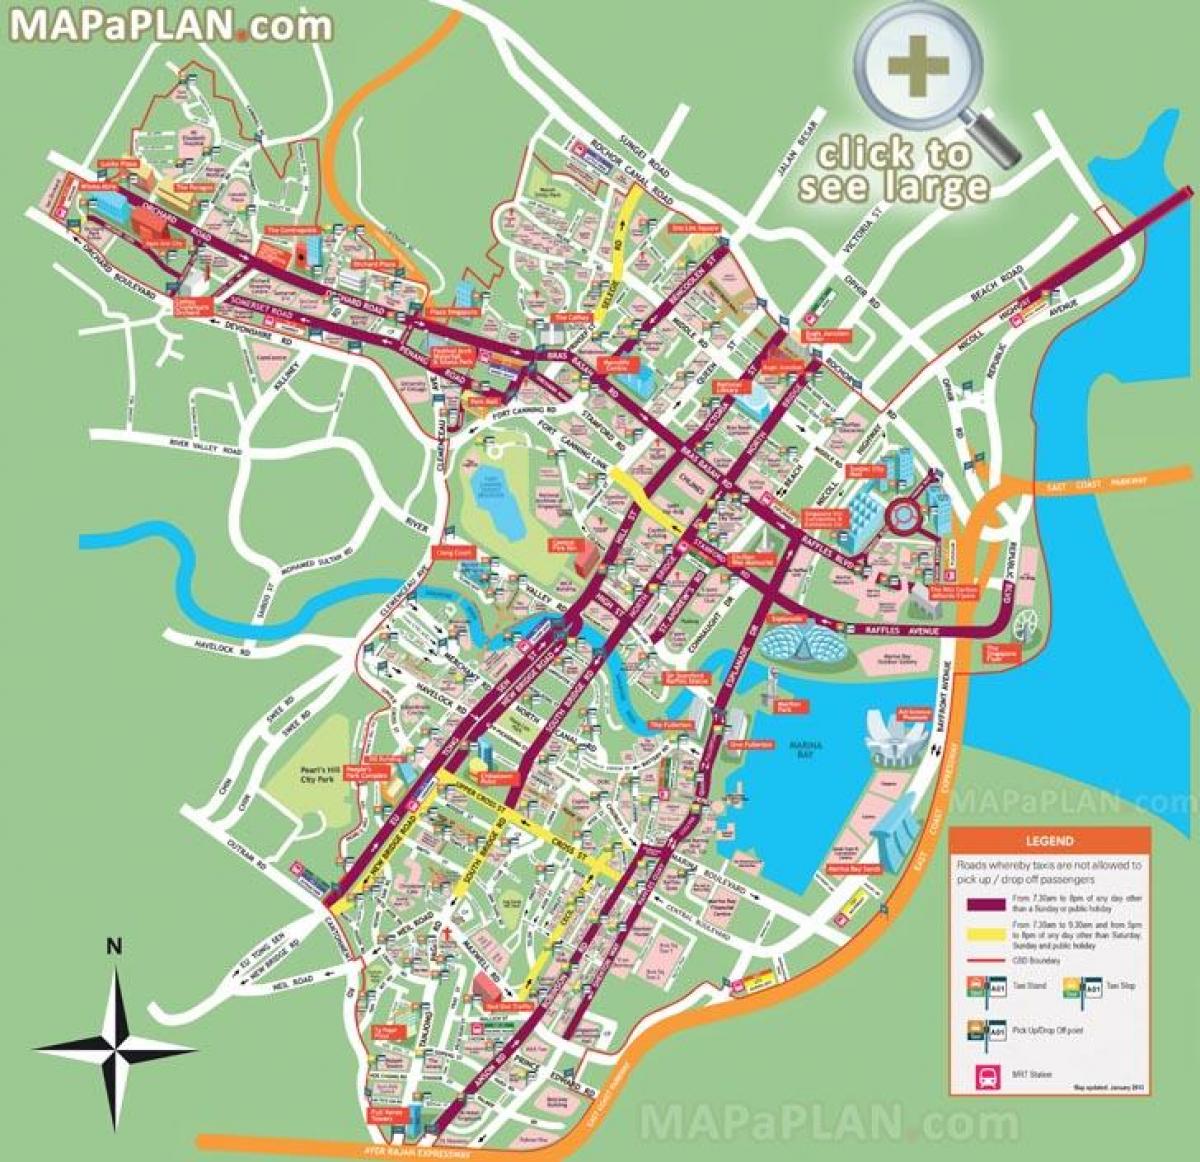 Singapura pontos turísticos mapa